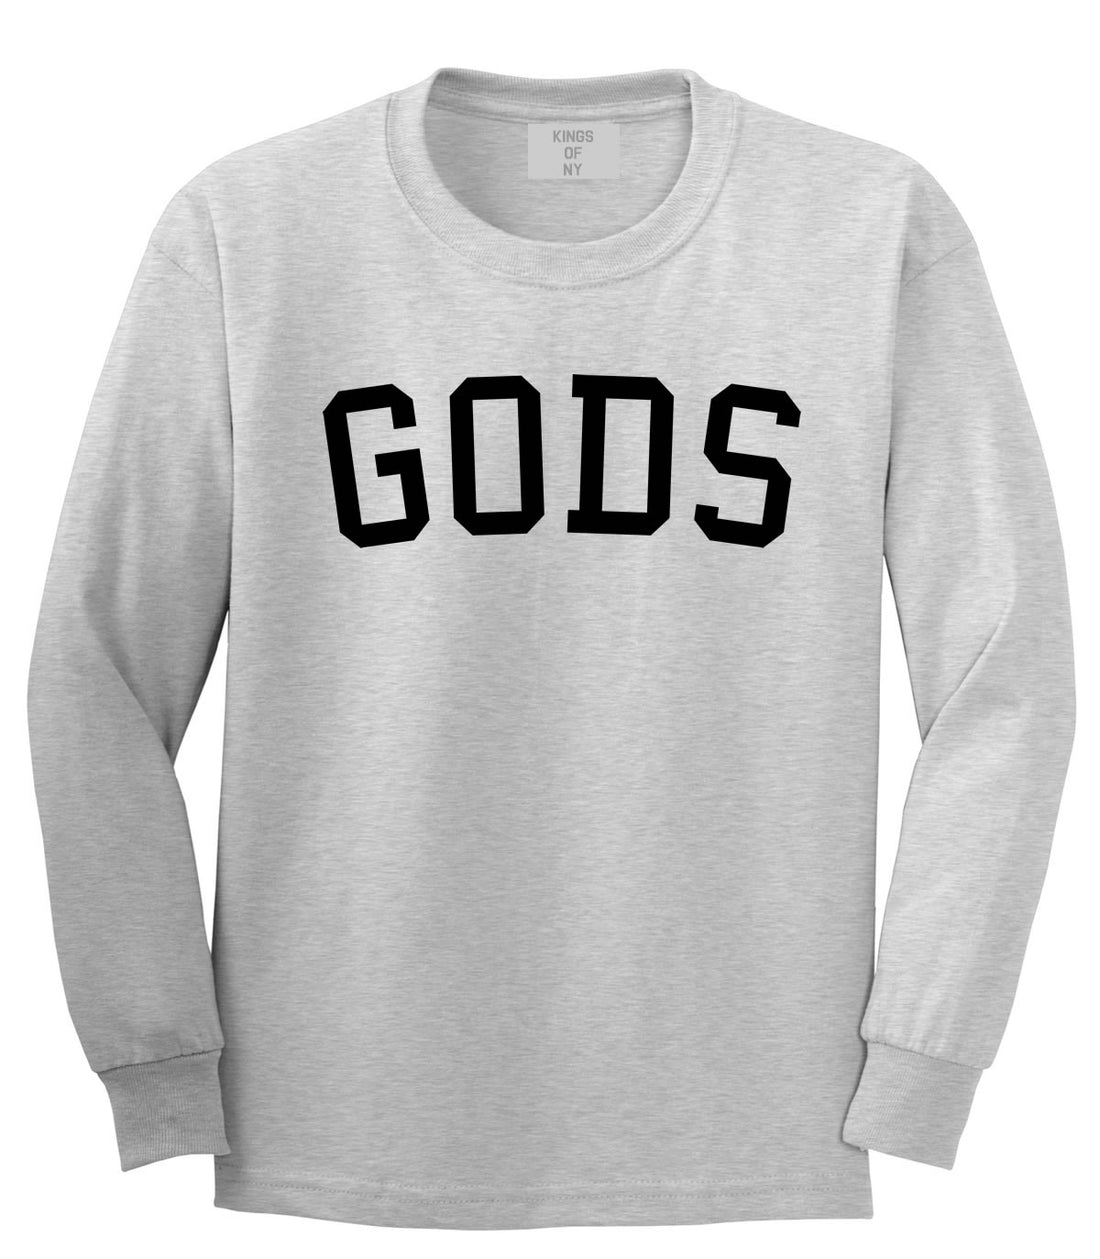 Kings Of NY Gods Long Sleeve T-Shirt in Grey